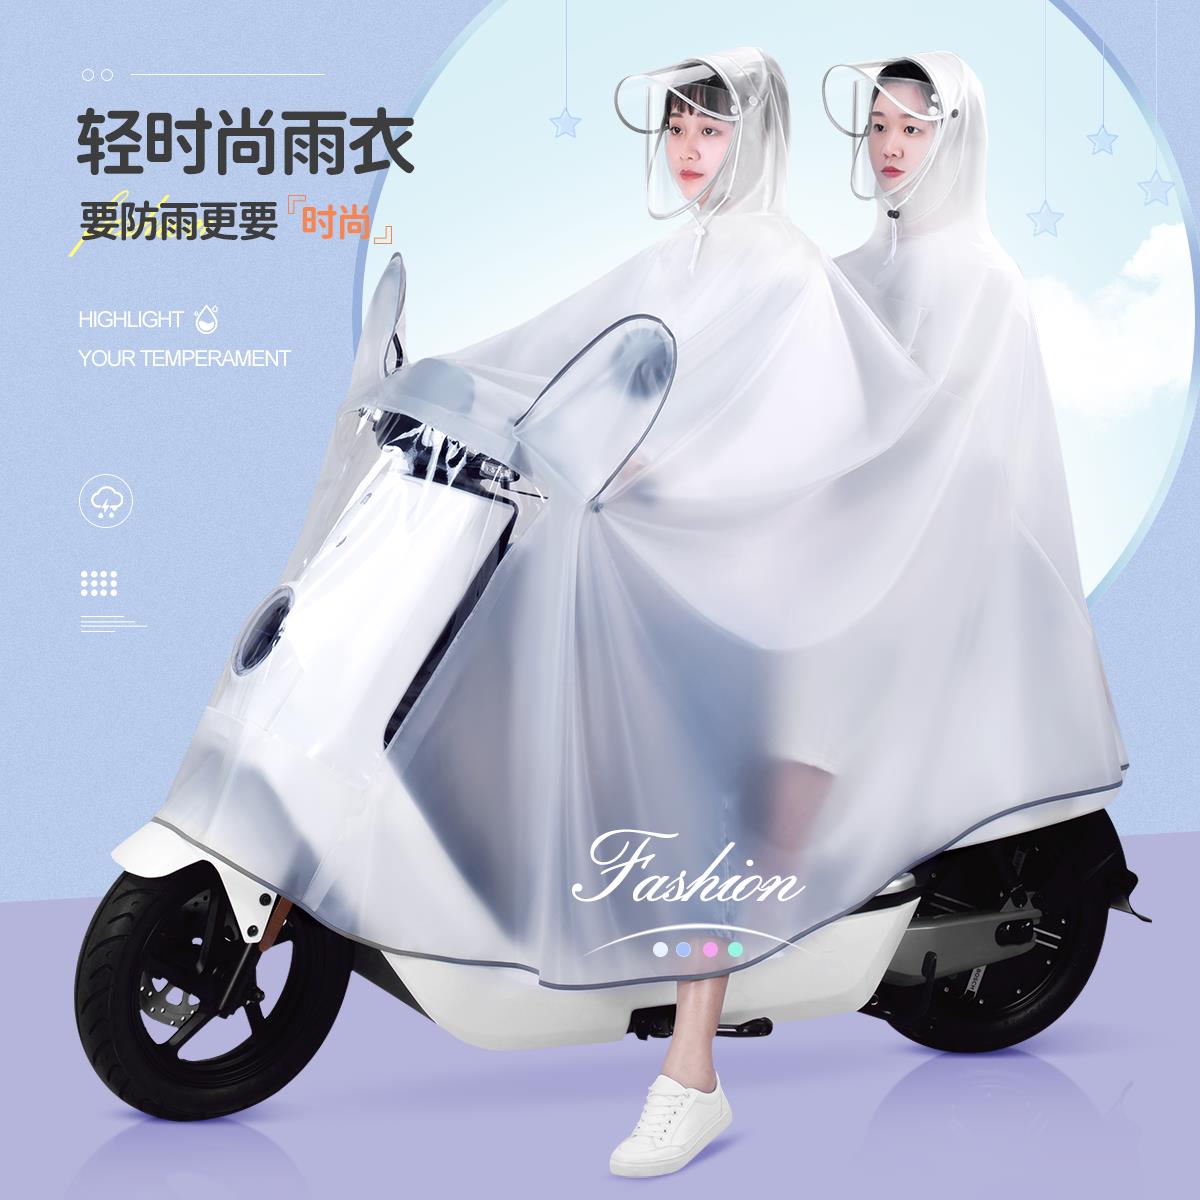 雨衣雙人2021年新款男女電動車2人長款全身防暴雨電瓶摩托車雨披